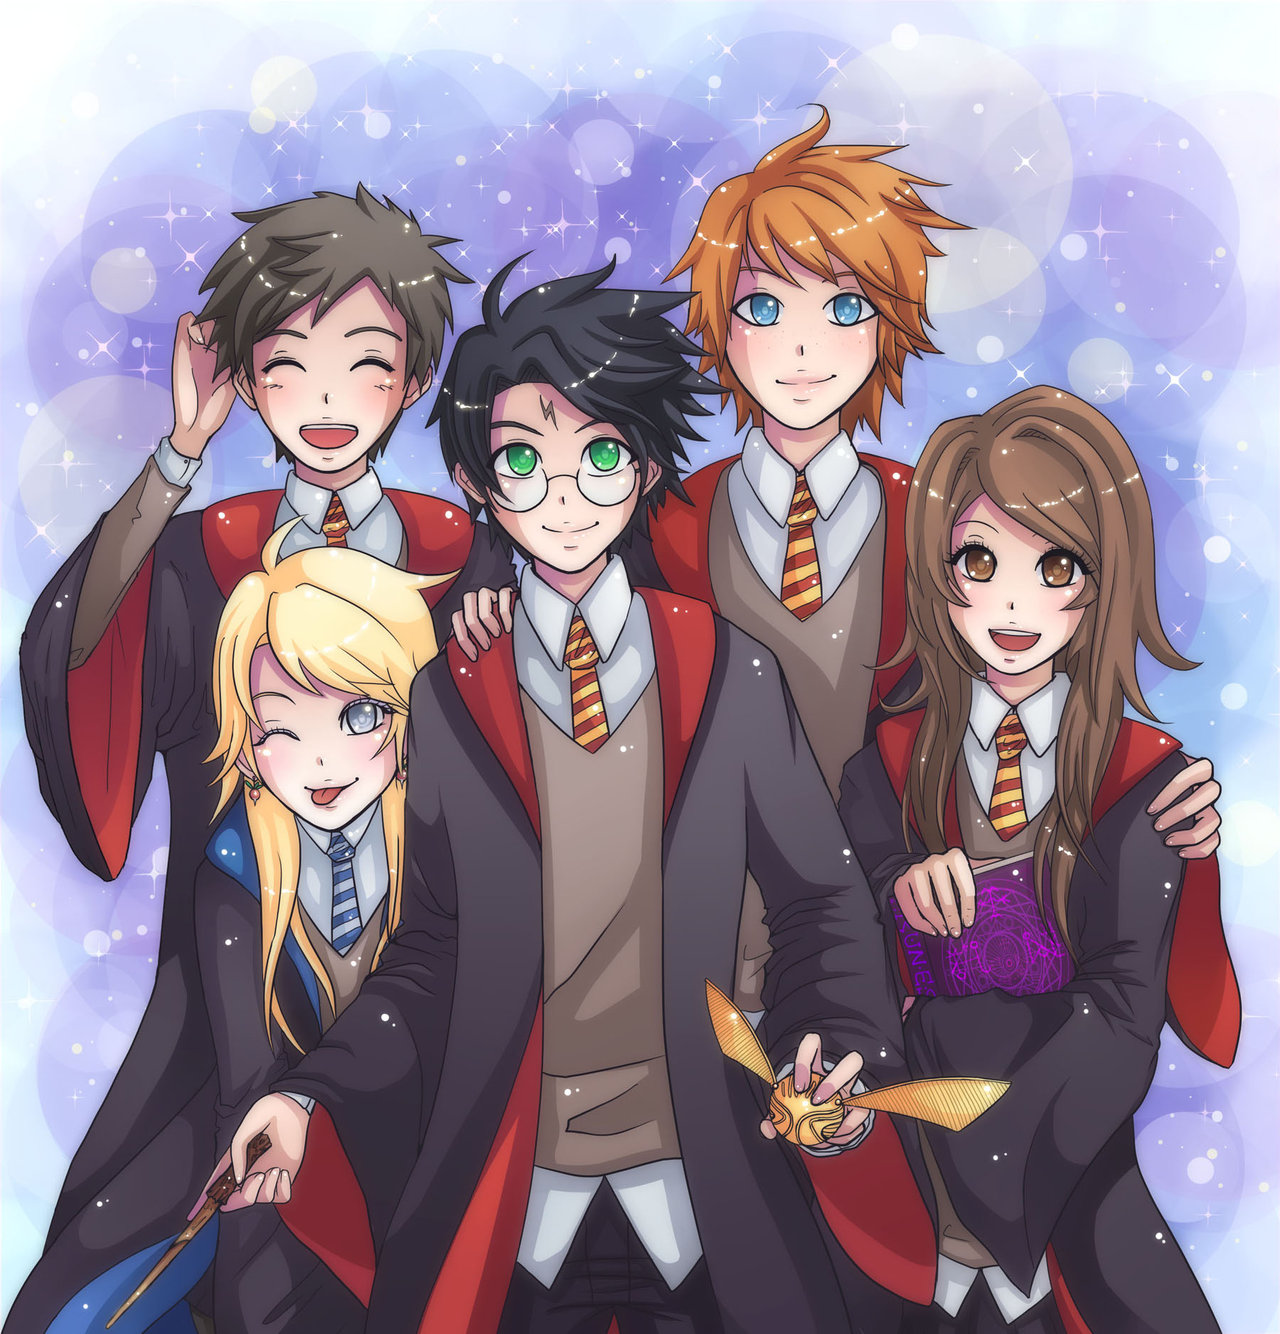 Khi tạo hình của các nhân vật Harry Potter được làm thành anime